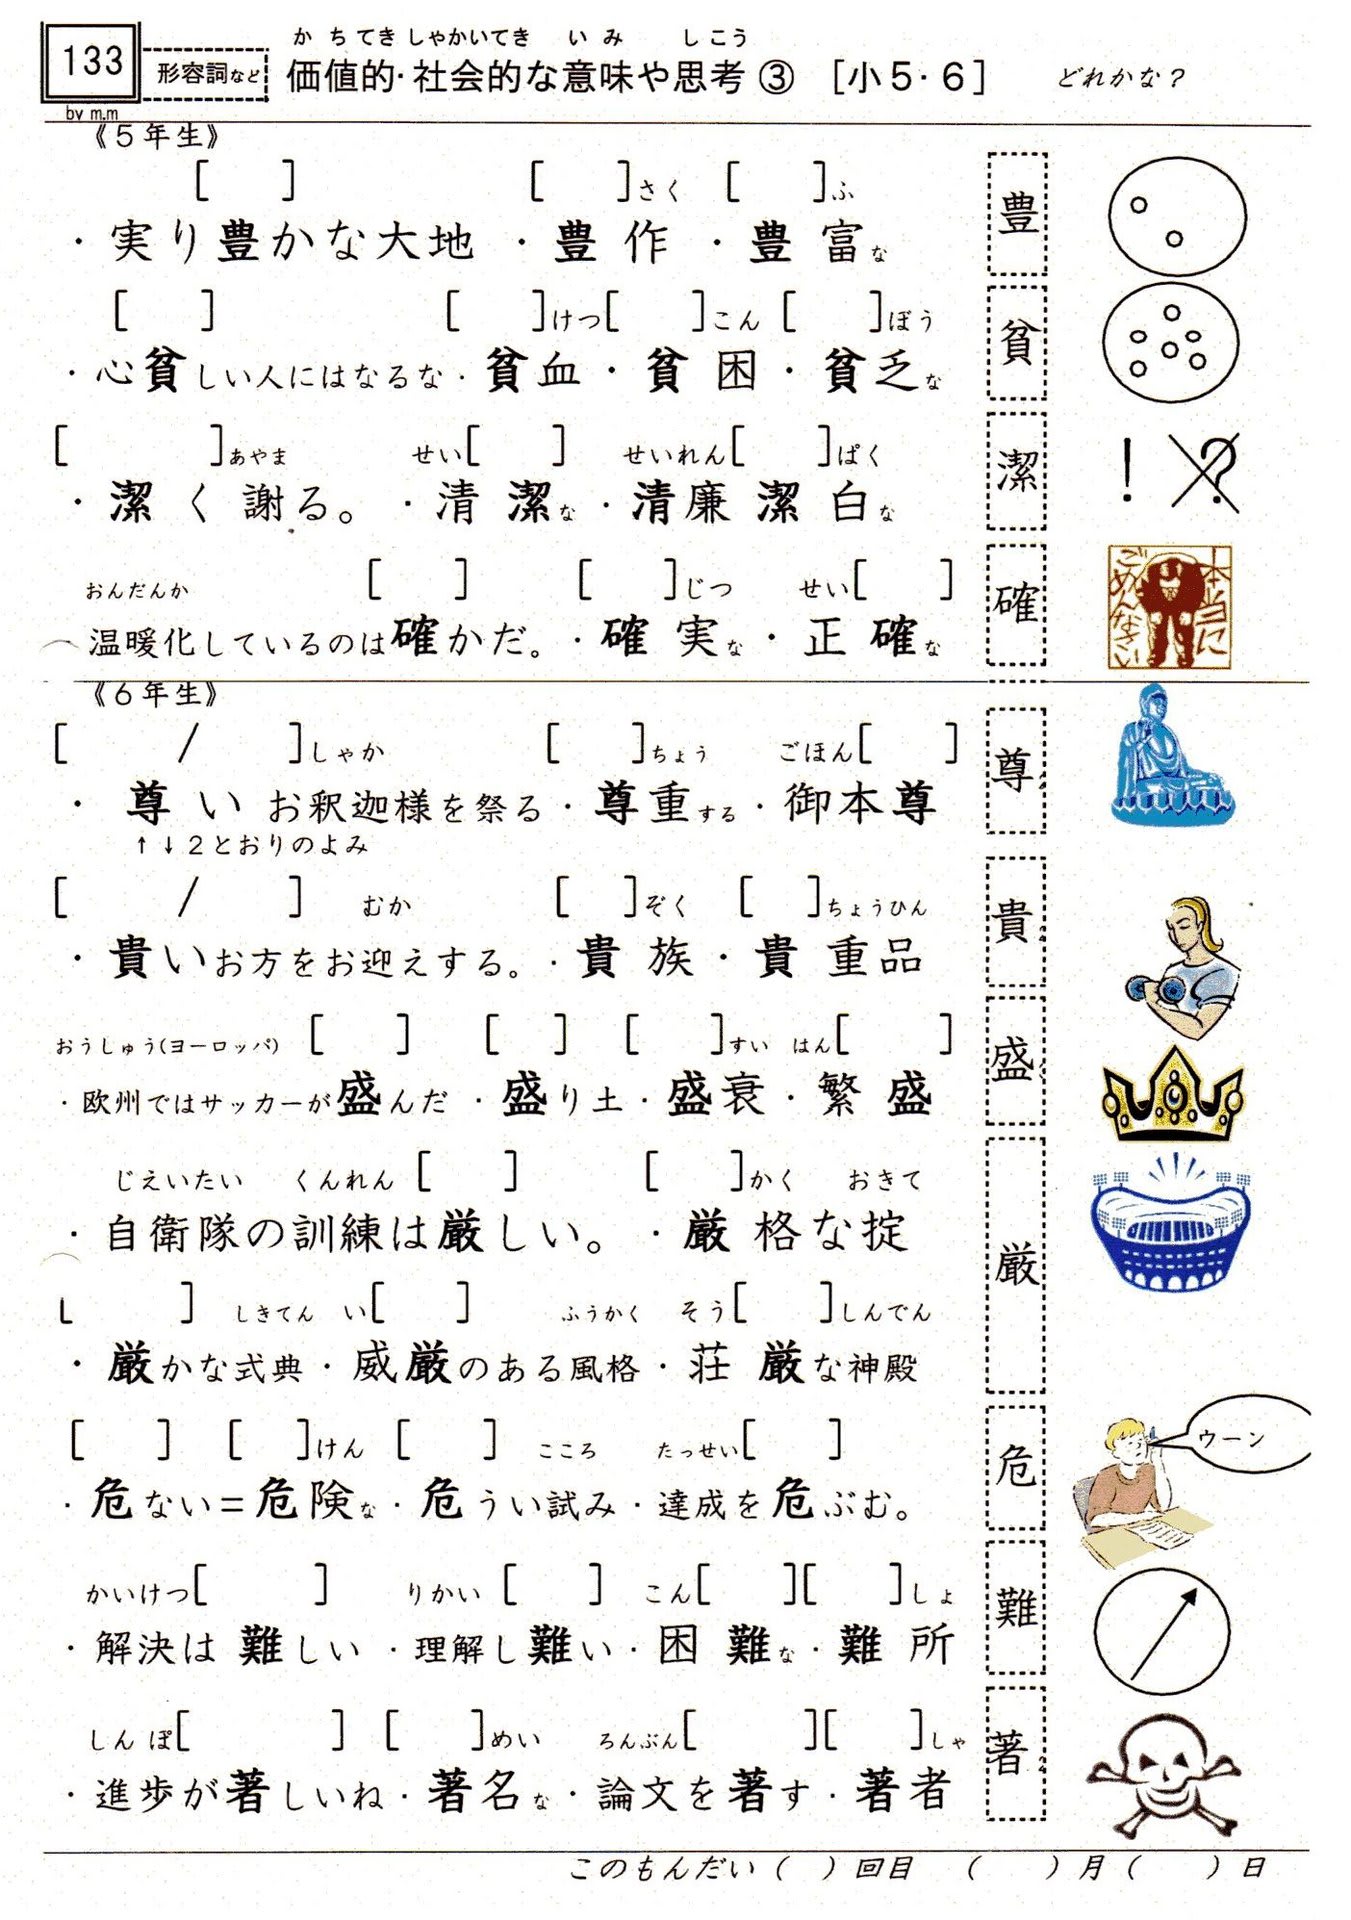 小学校漢字の読み 133 価値的 社会的な意味や思考 5 6年 理解が難しい 絵で表しにくい やおよろずの神々の棲む国で